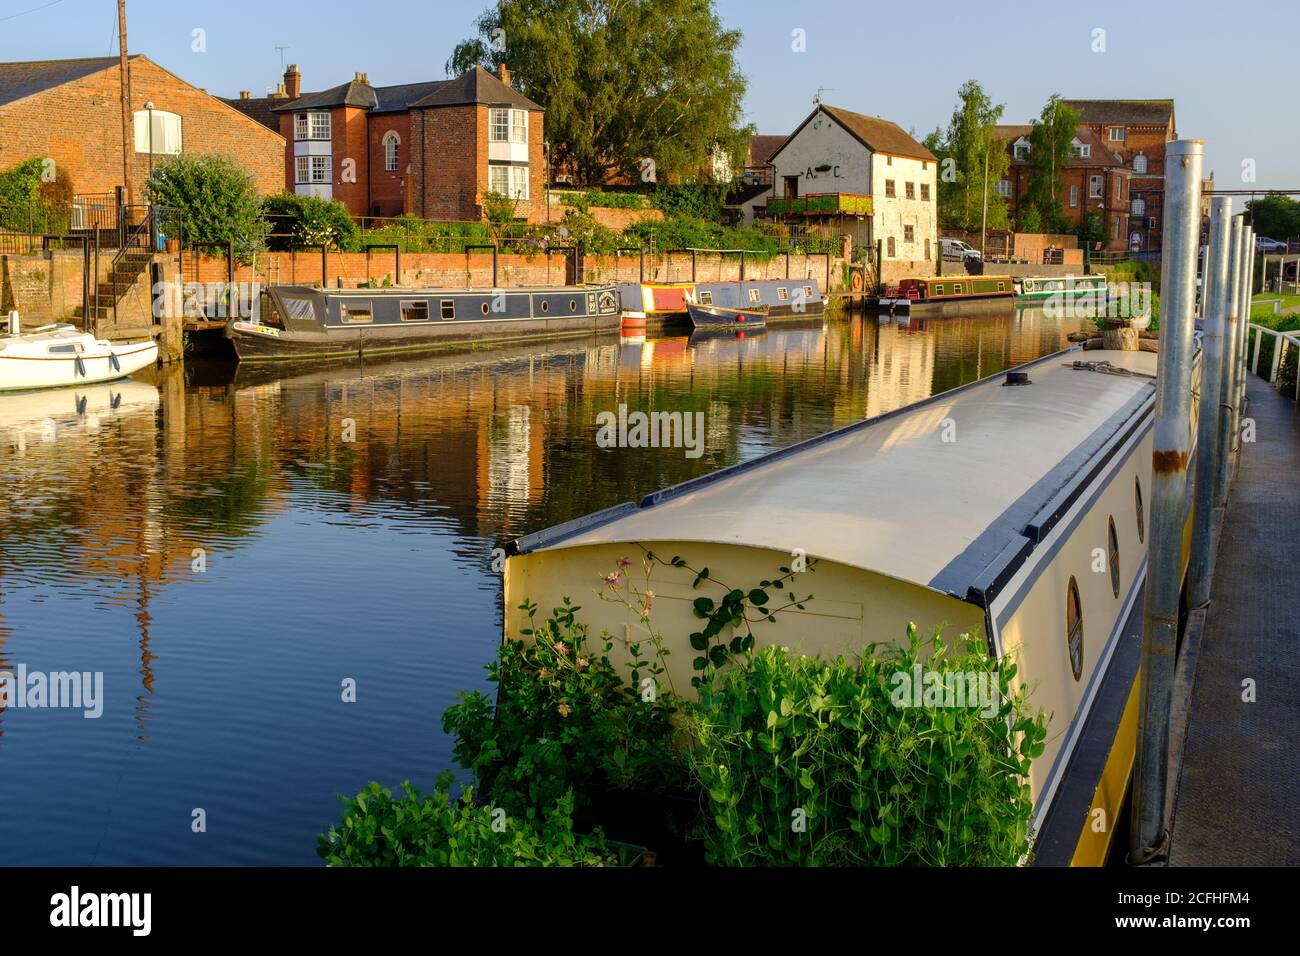 Canots à canots (Narrowboats) sur la rivière Avon lors d'une soirée en milieu d'été, Tewkesbury, Angleterre Banque D'Images